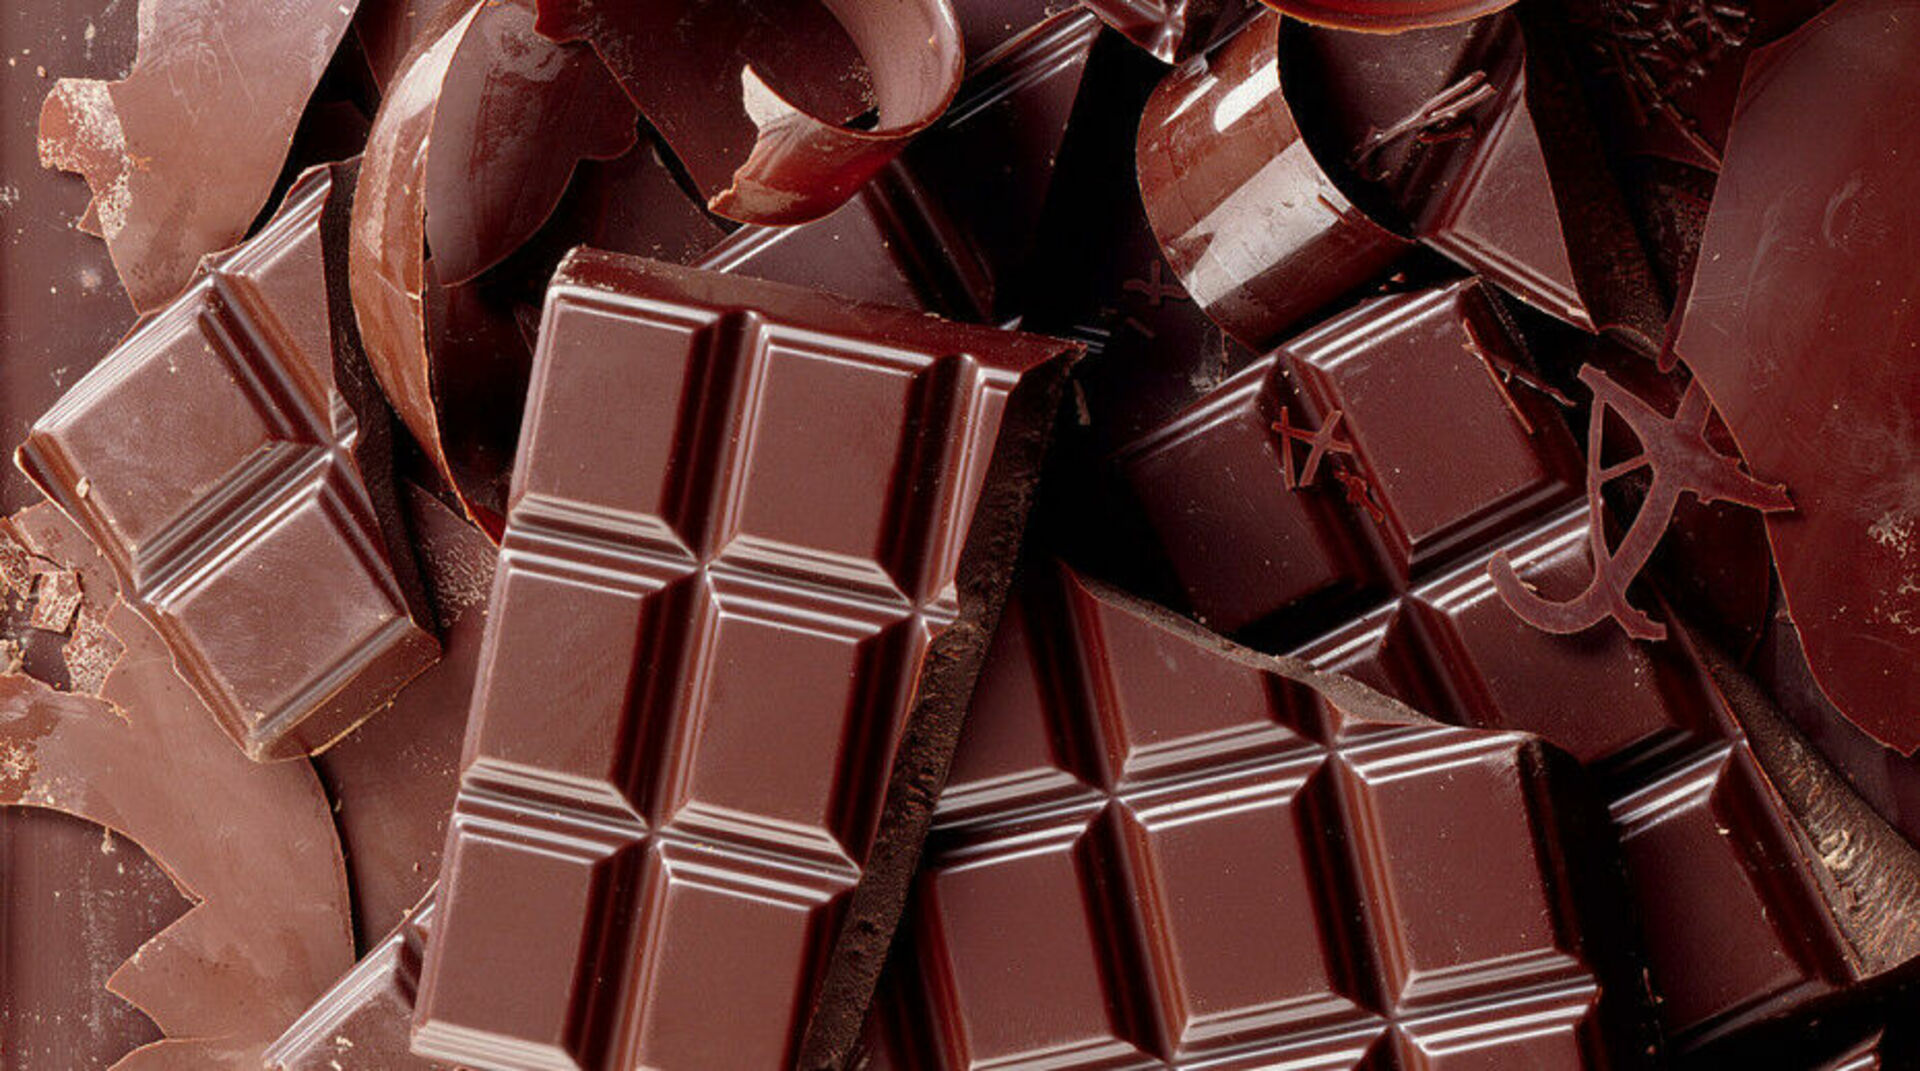 Качественный шоколад в россии. Шоколад. Плитка шоколада. Красивый шоколад. Красивые шоколадные плитки.